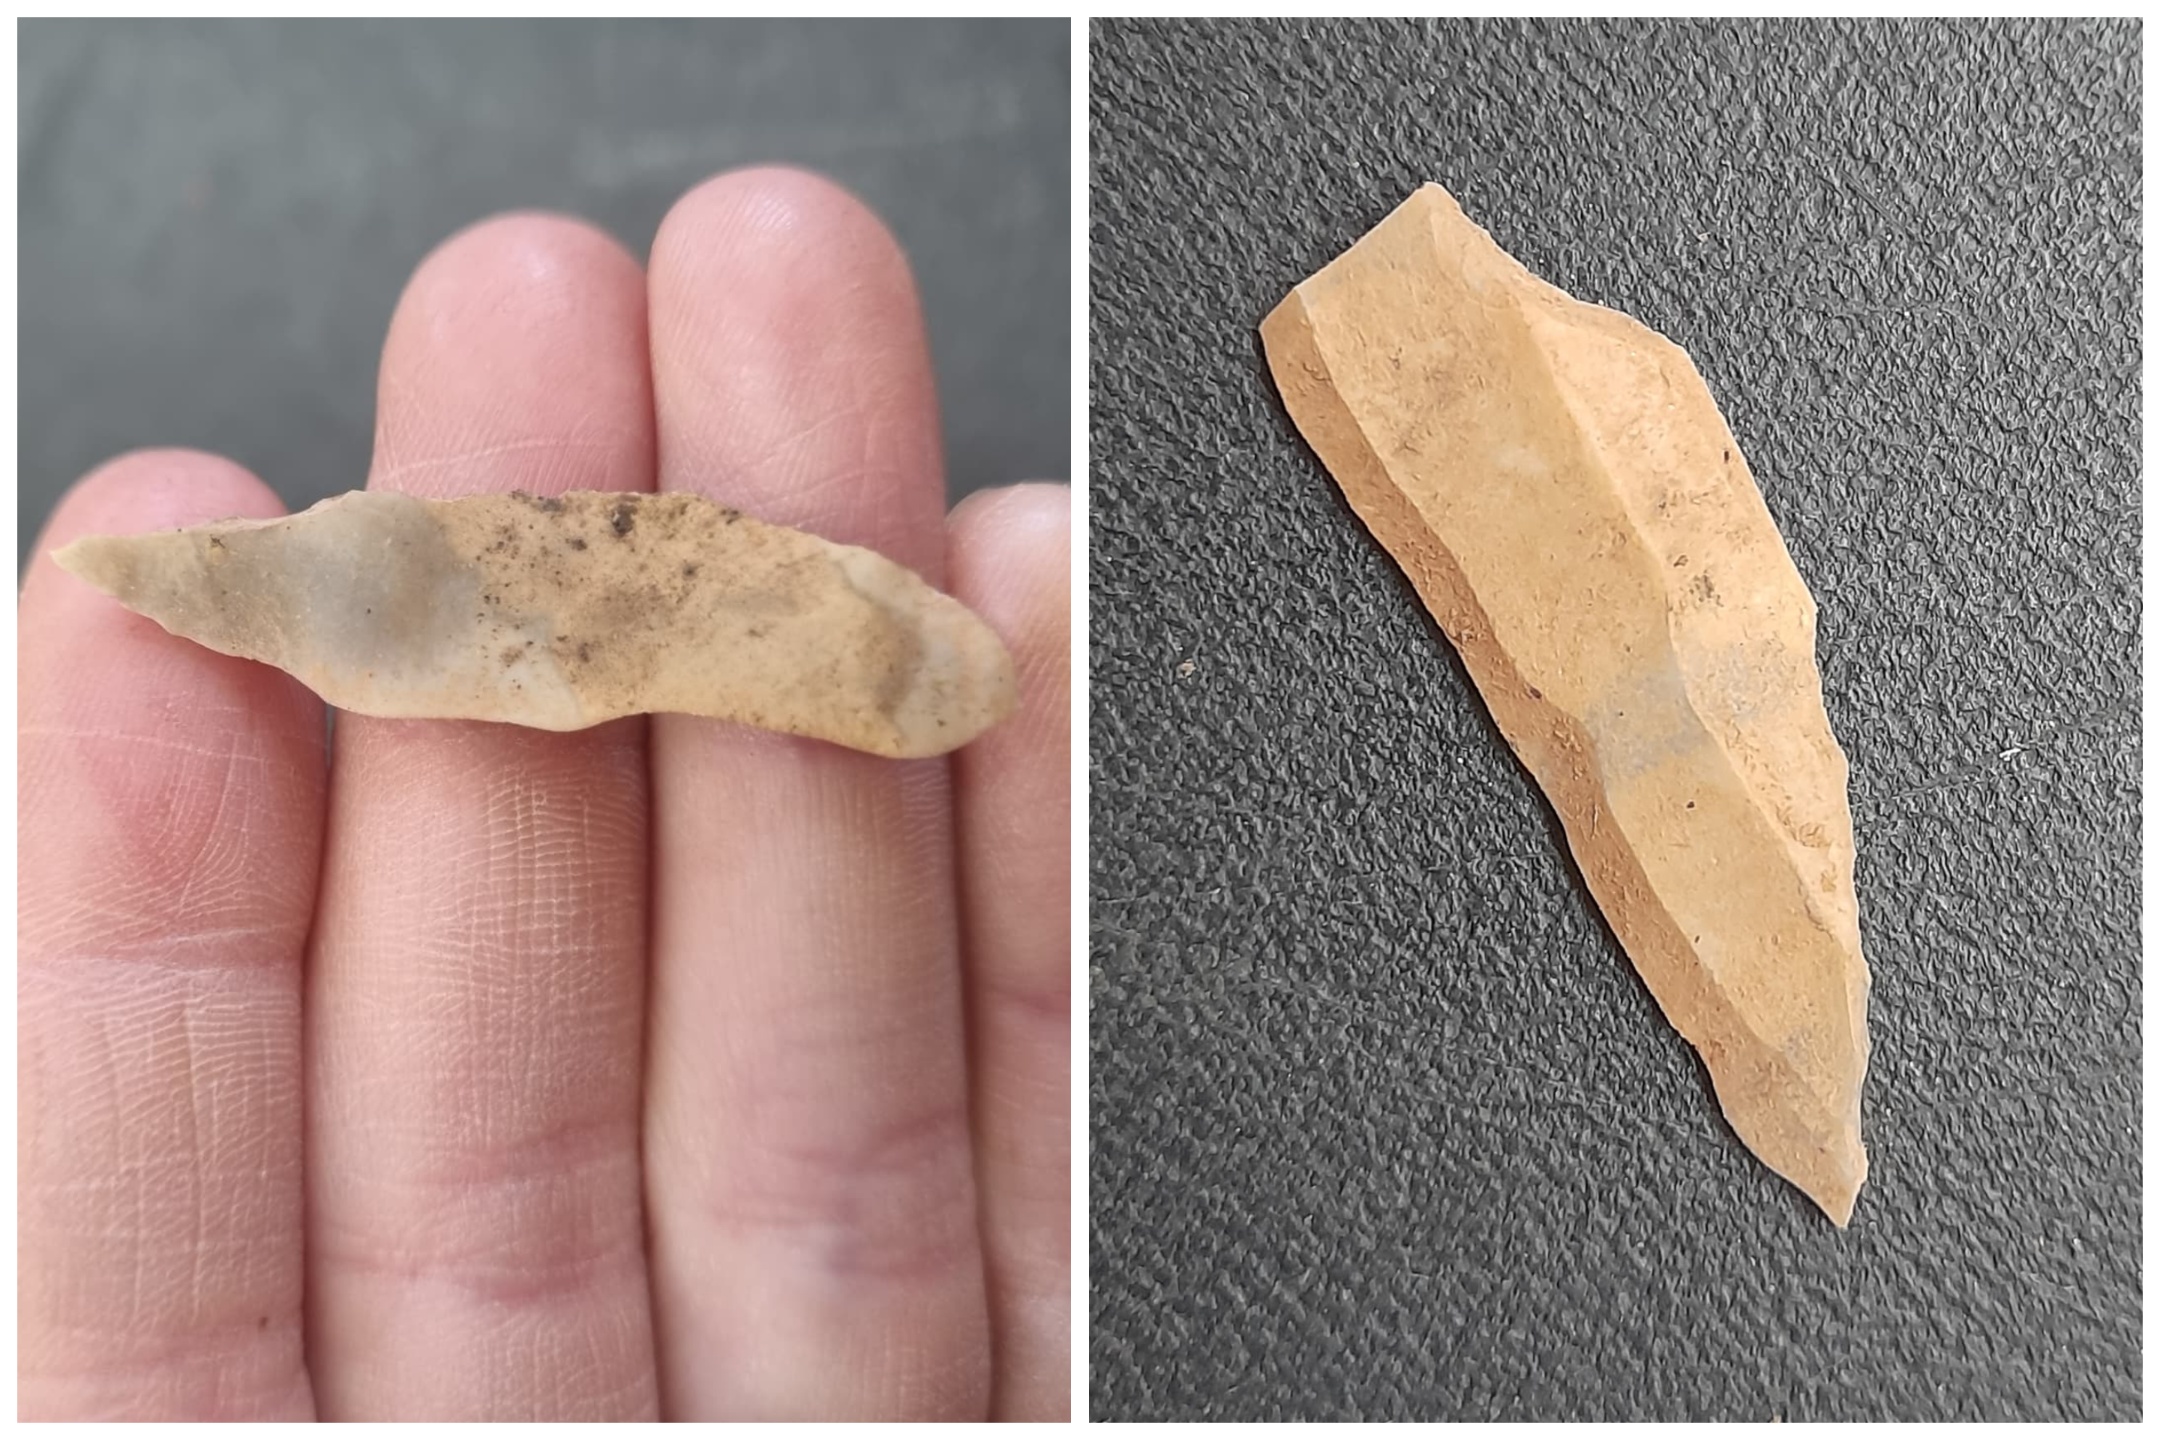 Des artefacts paléolithiques « vraiment importants » découverts lors de travaux routiers